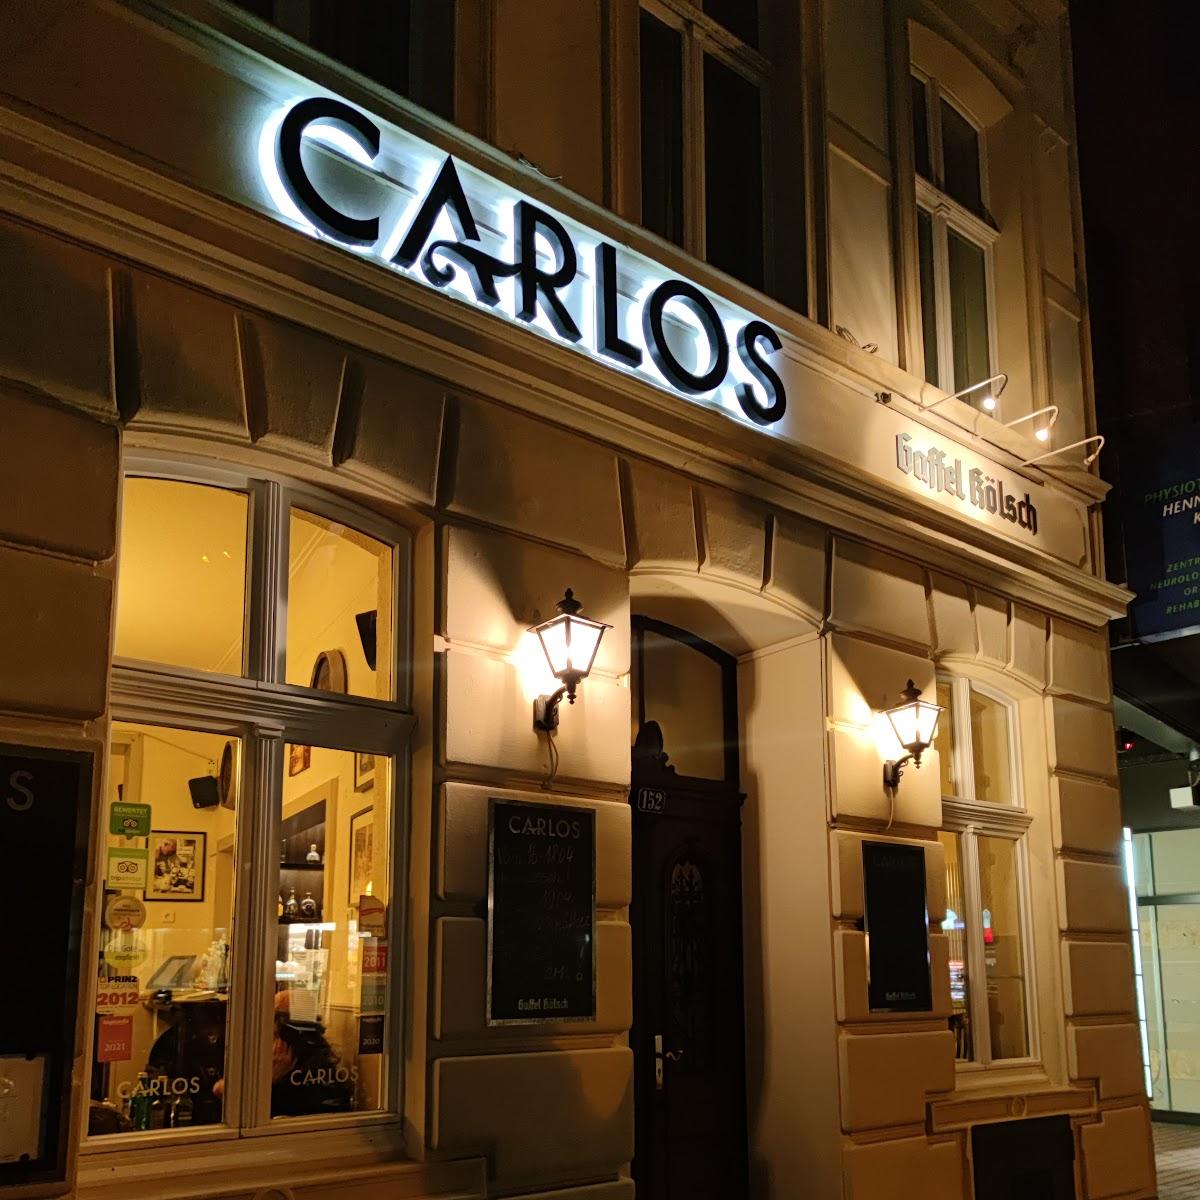 Restaurant "Carlos" in Köln